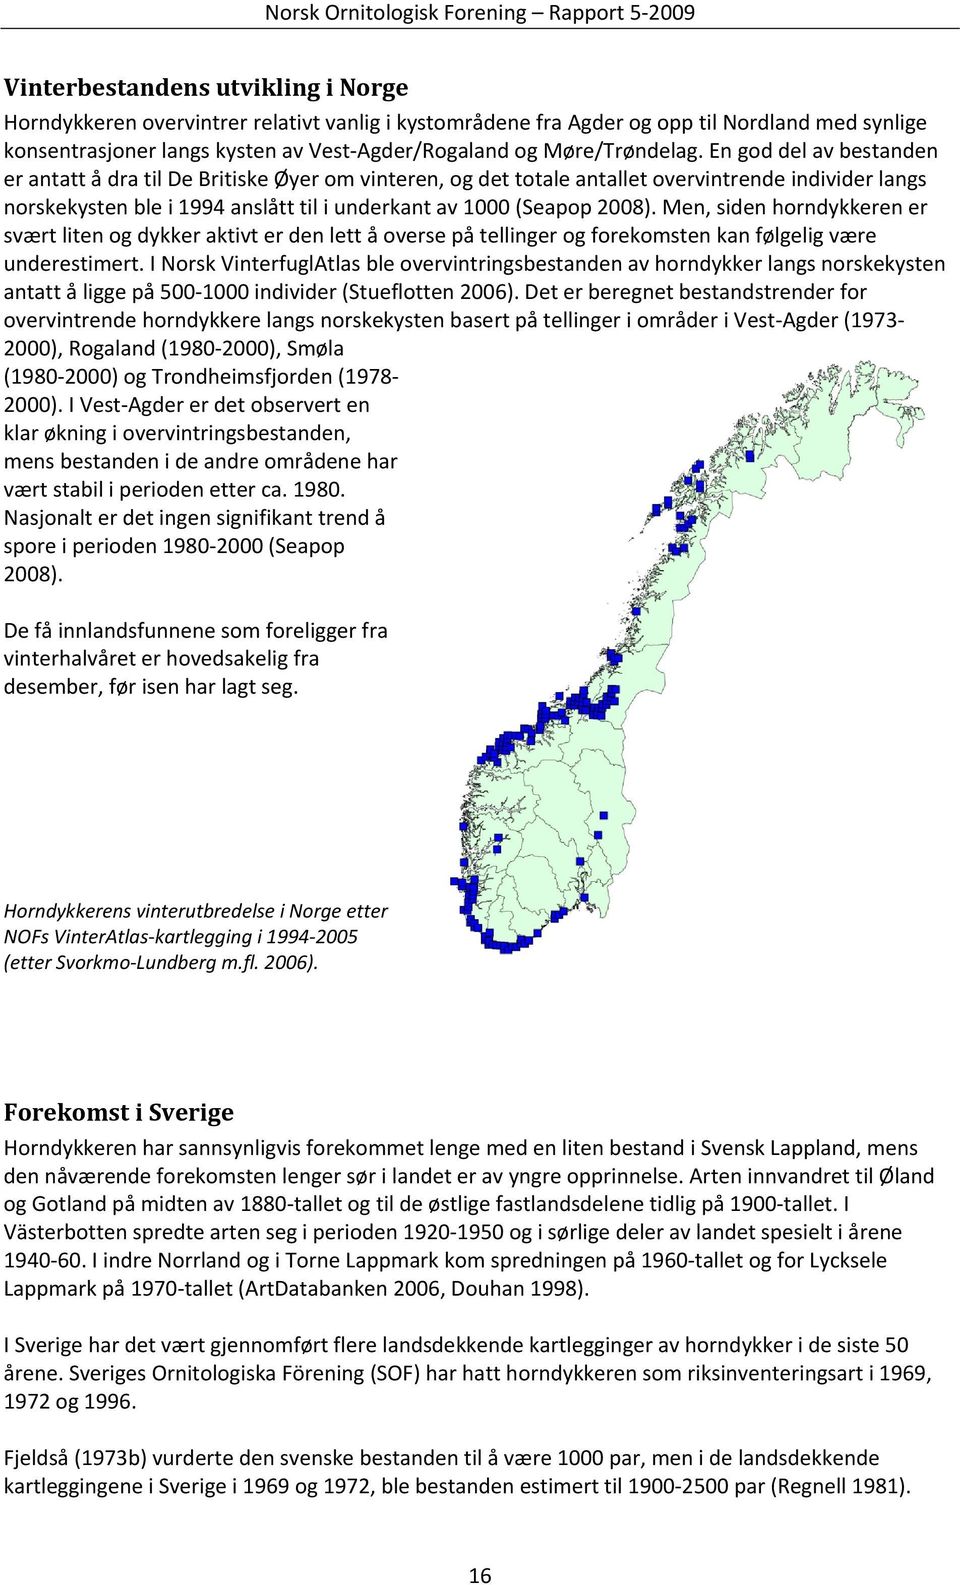 En god del av bestanden er antatt å dra til De Britiske Øyer om vinteren, og det totale antallet overvintrende individer langs norskekysten ble i 1994 anslått til i underkant av 1000 (Seapop 2008).